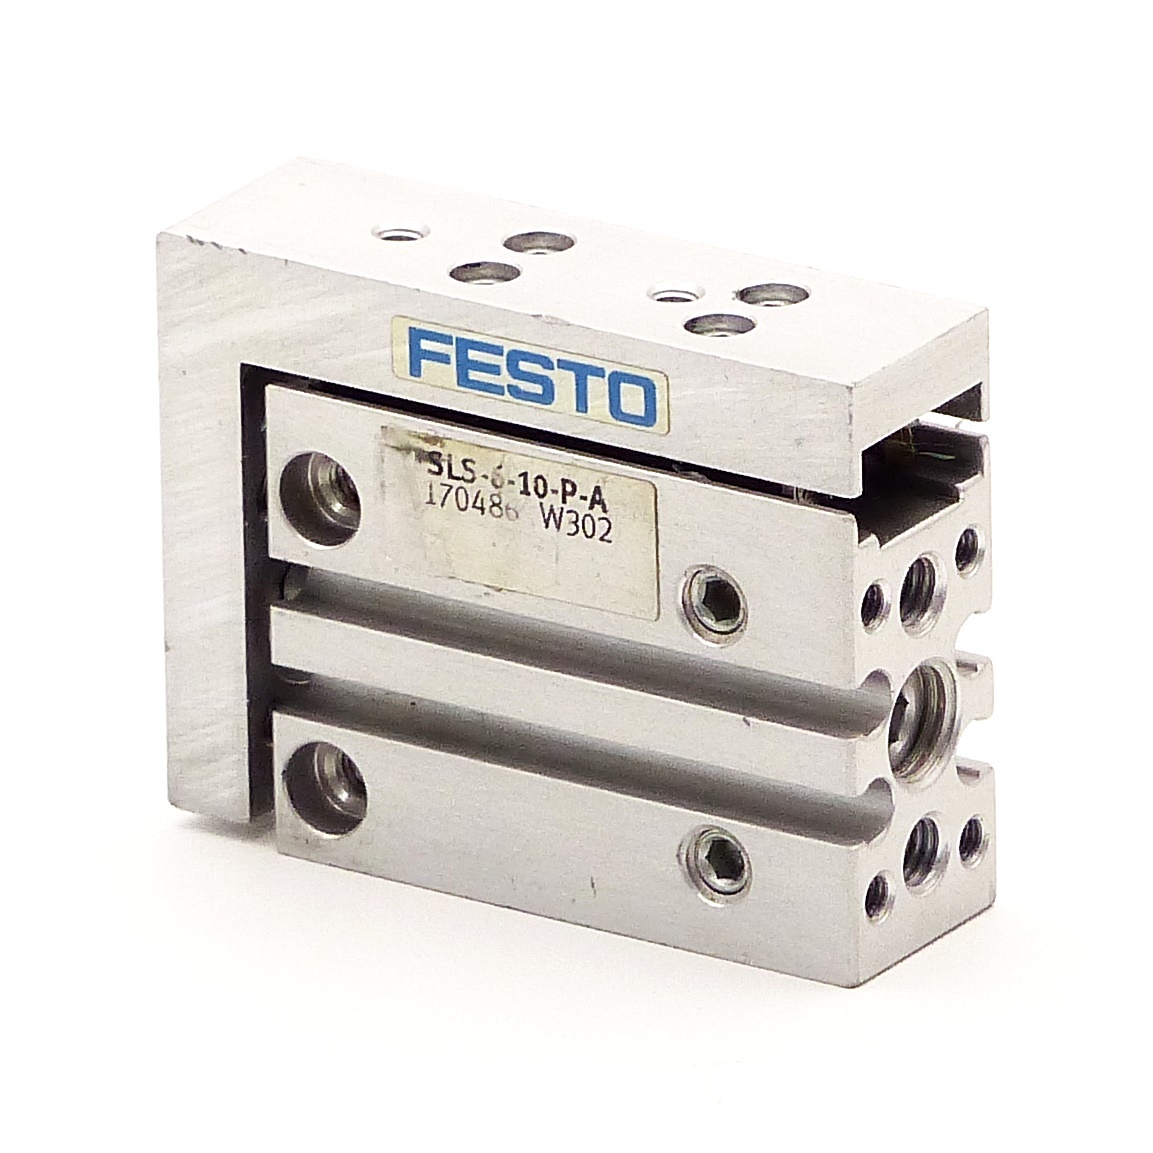 FESTO Mini slide SLS-6-10-P-A